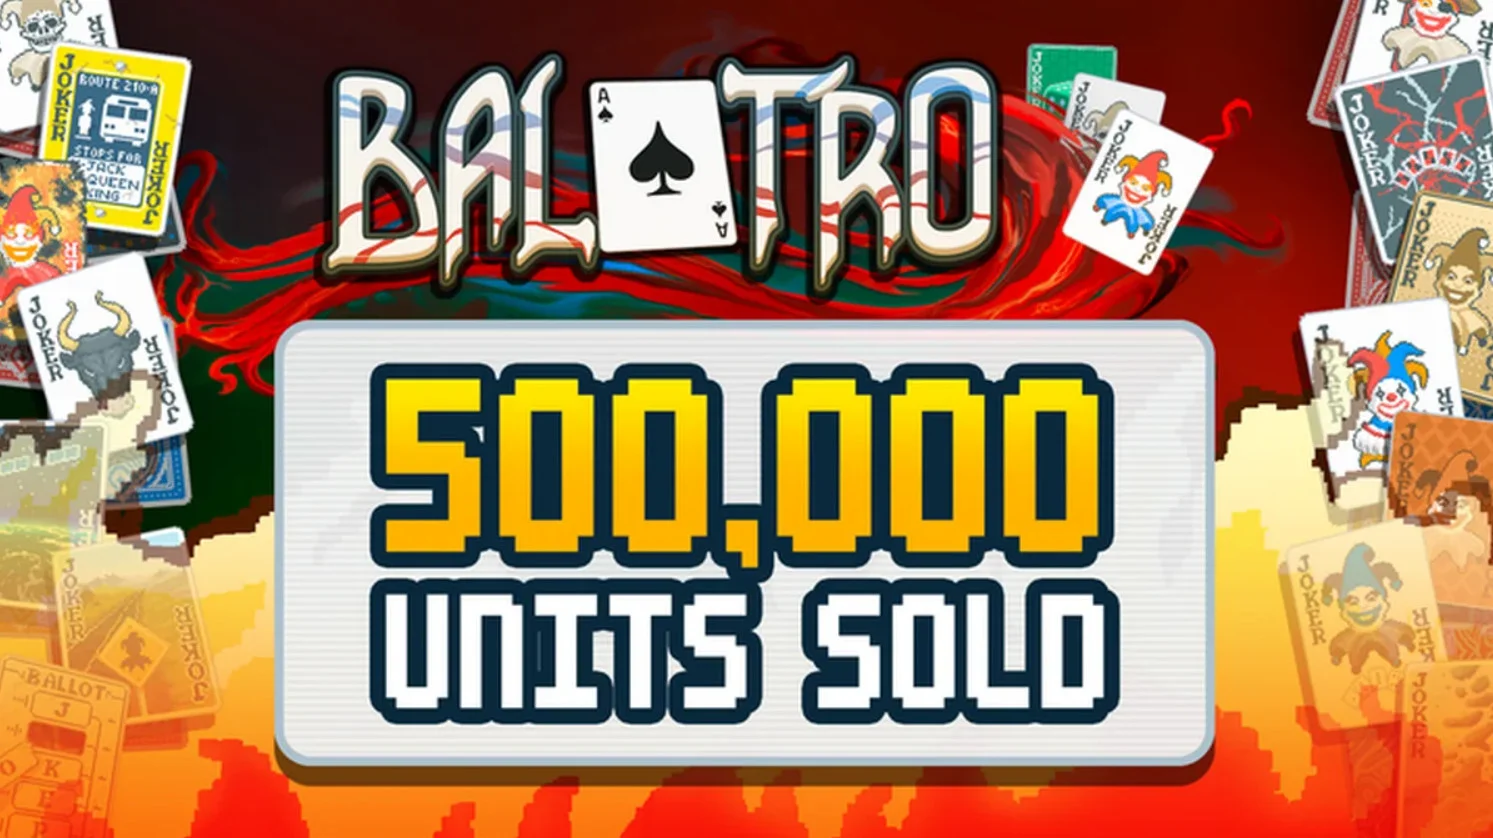 Продажи покерного рогалика Balatro превысили 500 тысяч копий за 10 дней - фото 1